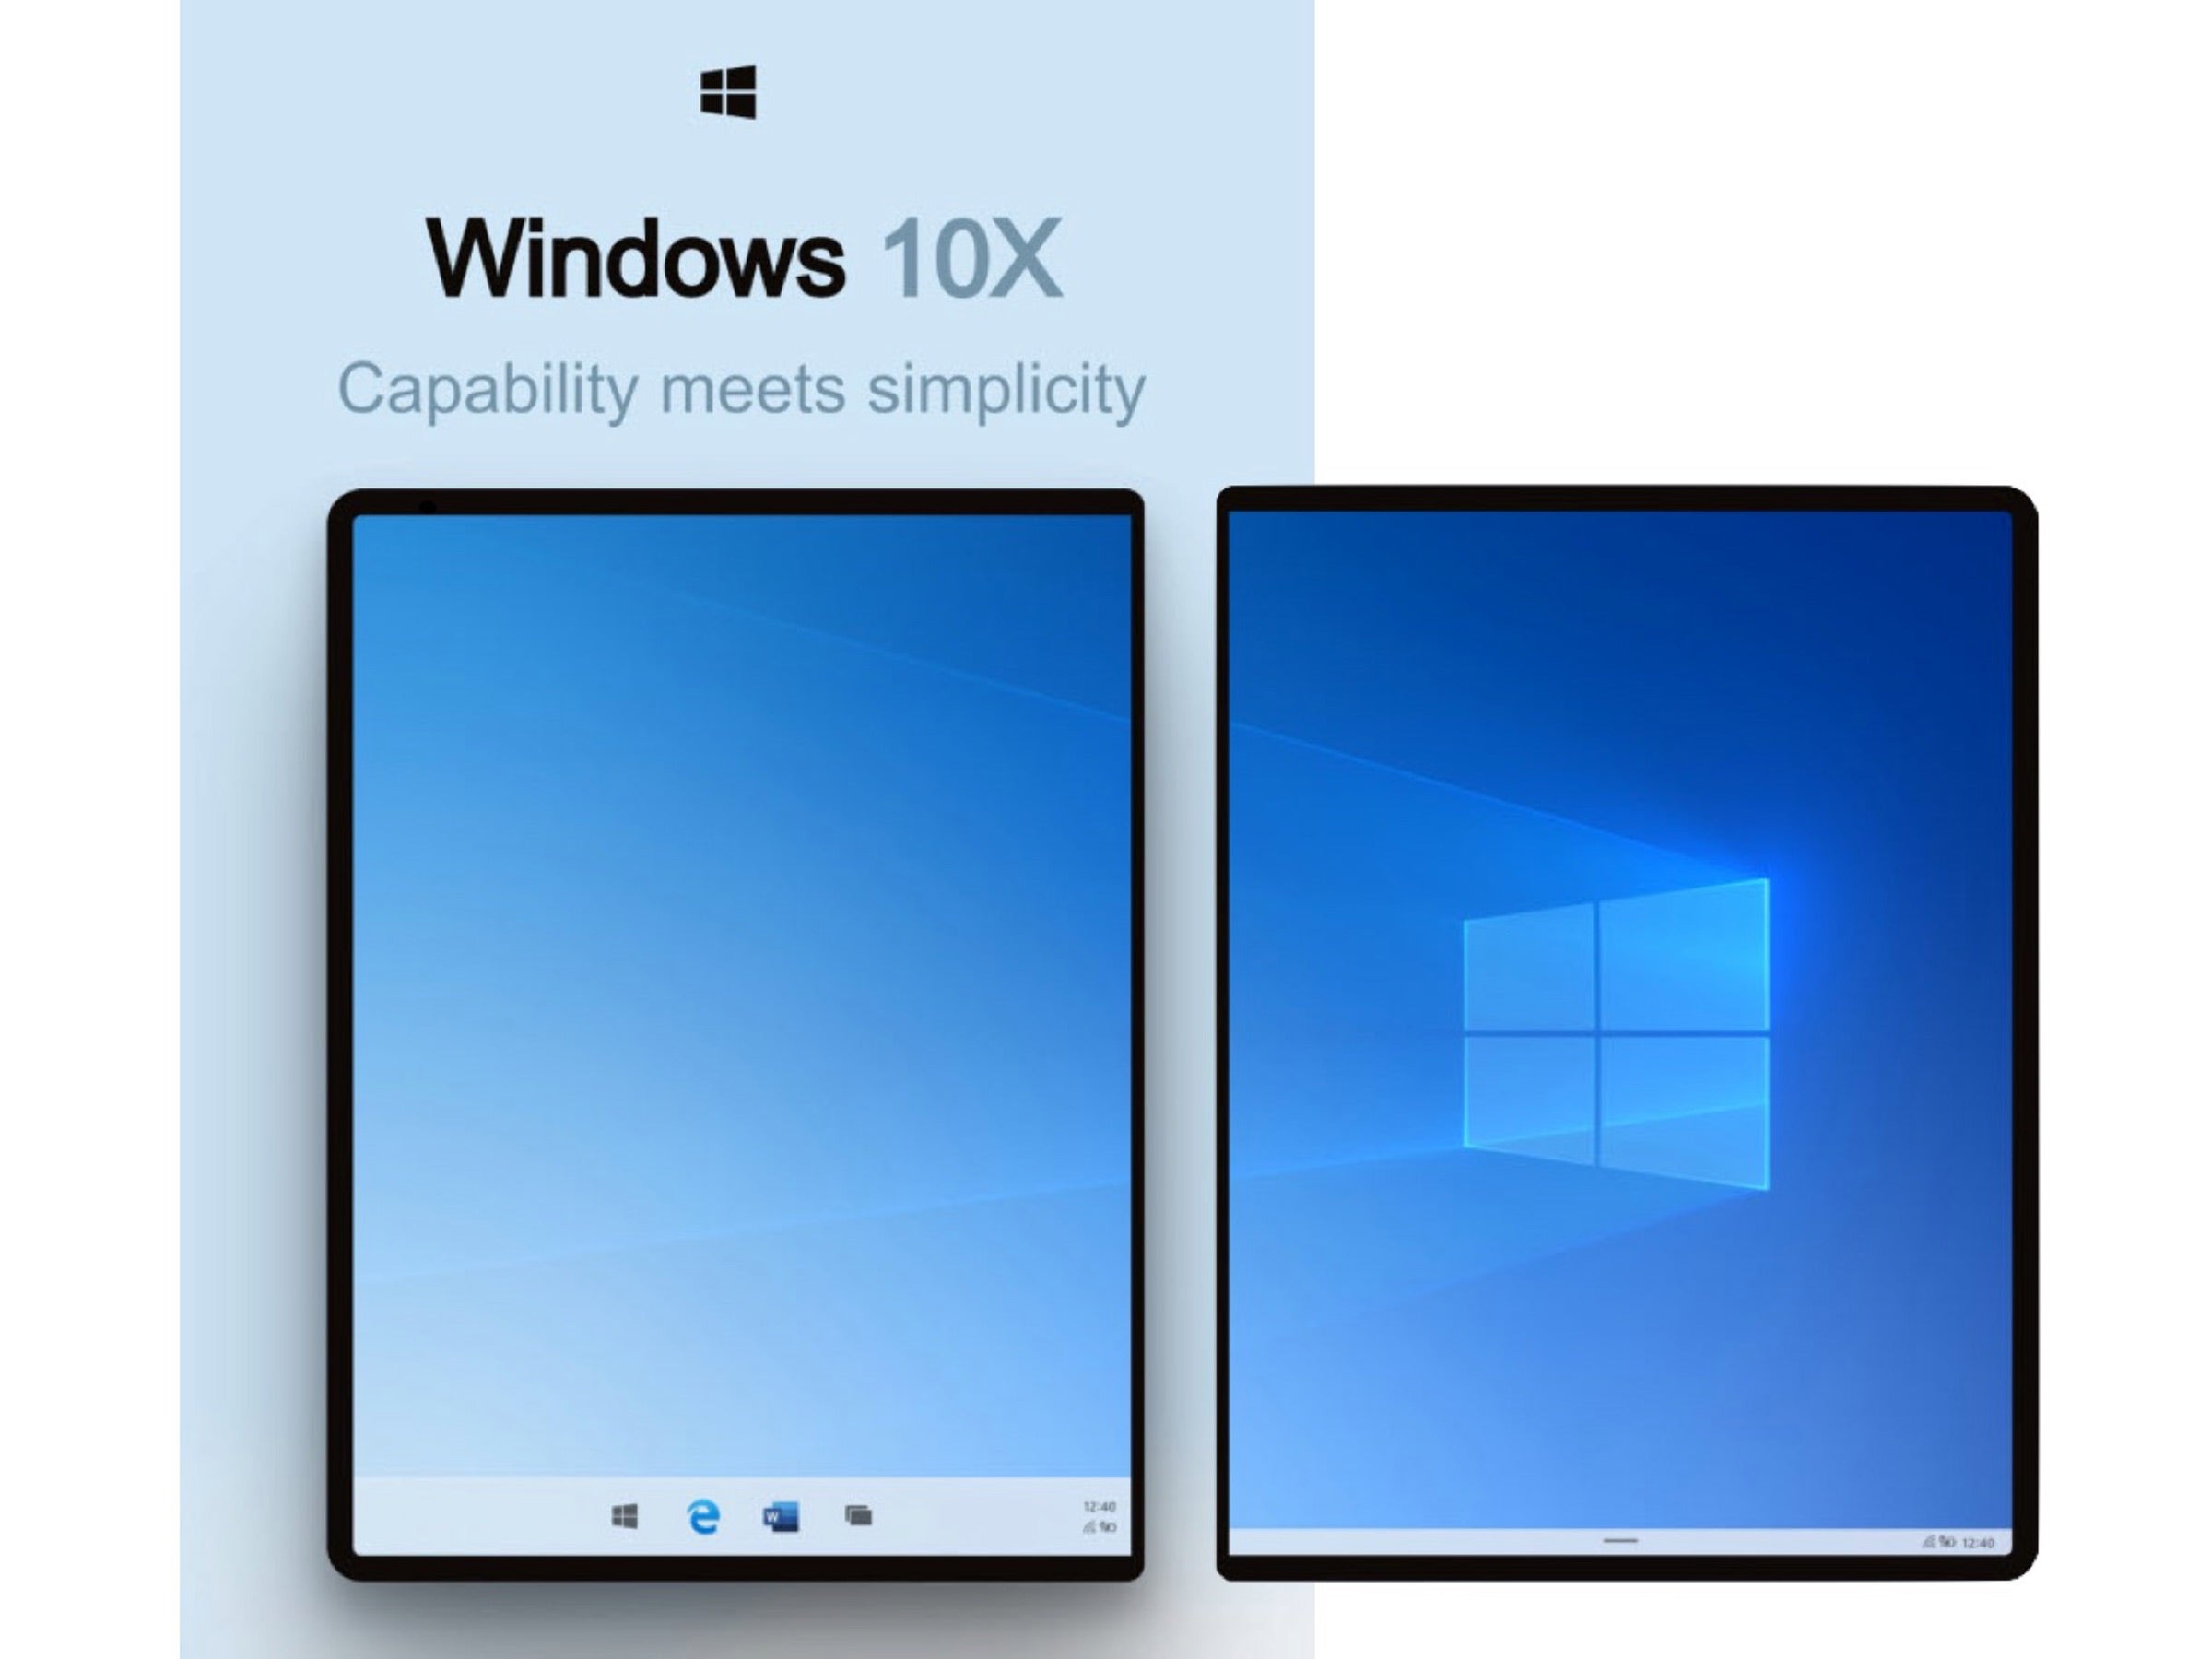 Windows 10X: Details geleakt - So sieht das neue Windows aus